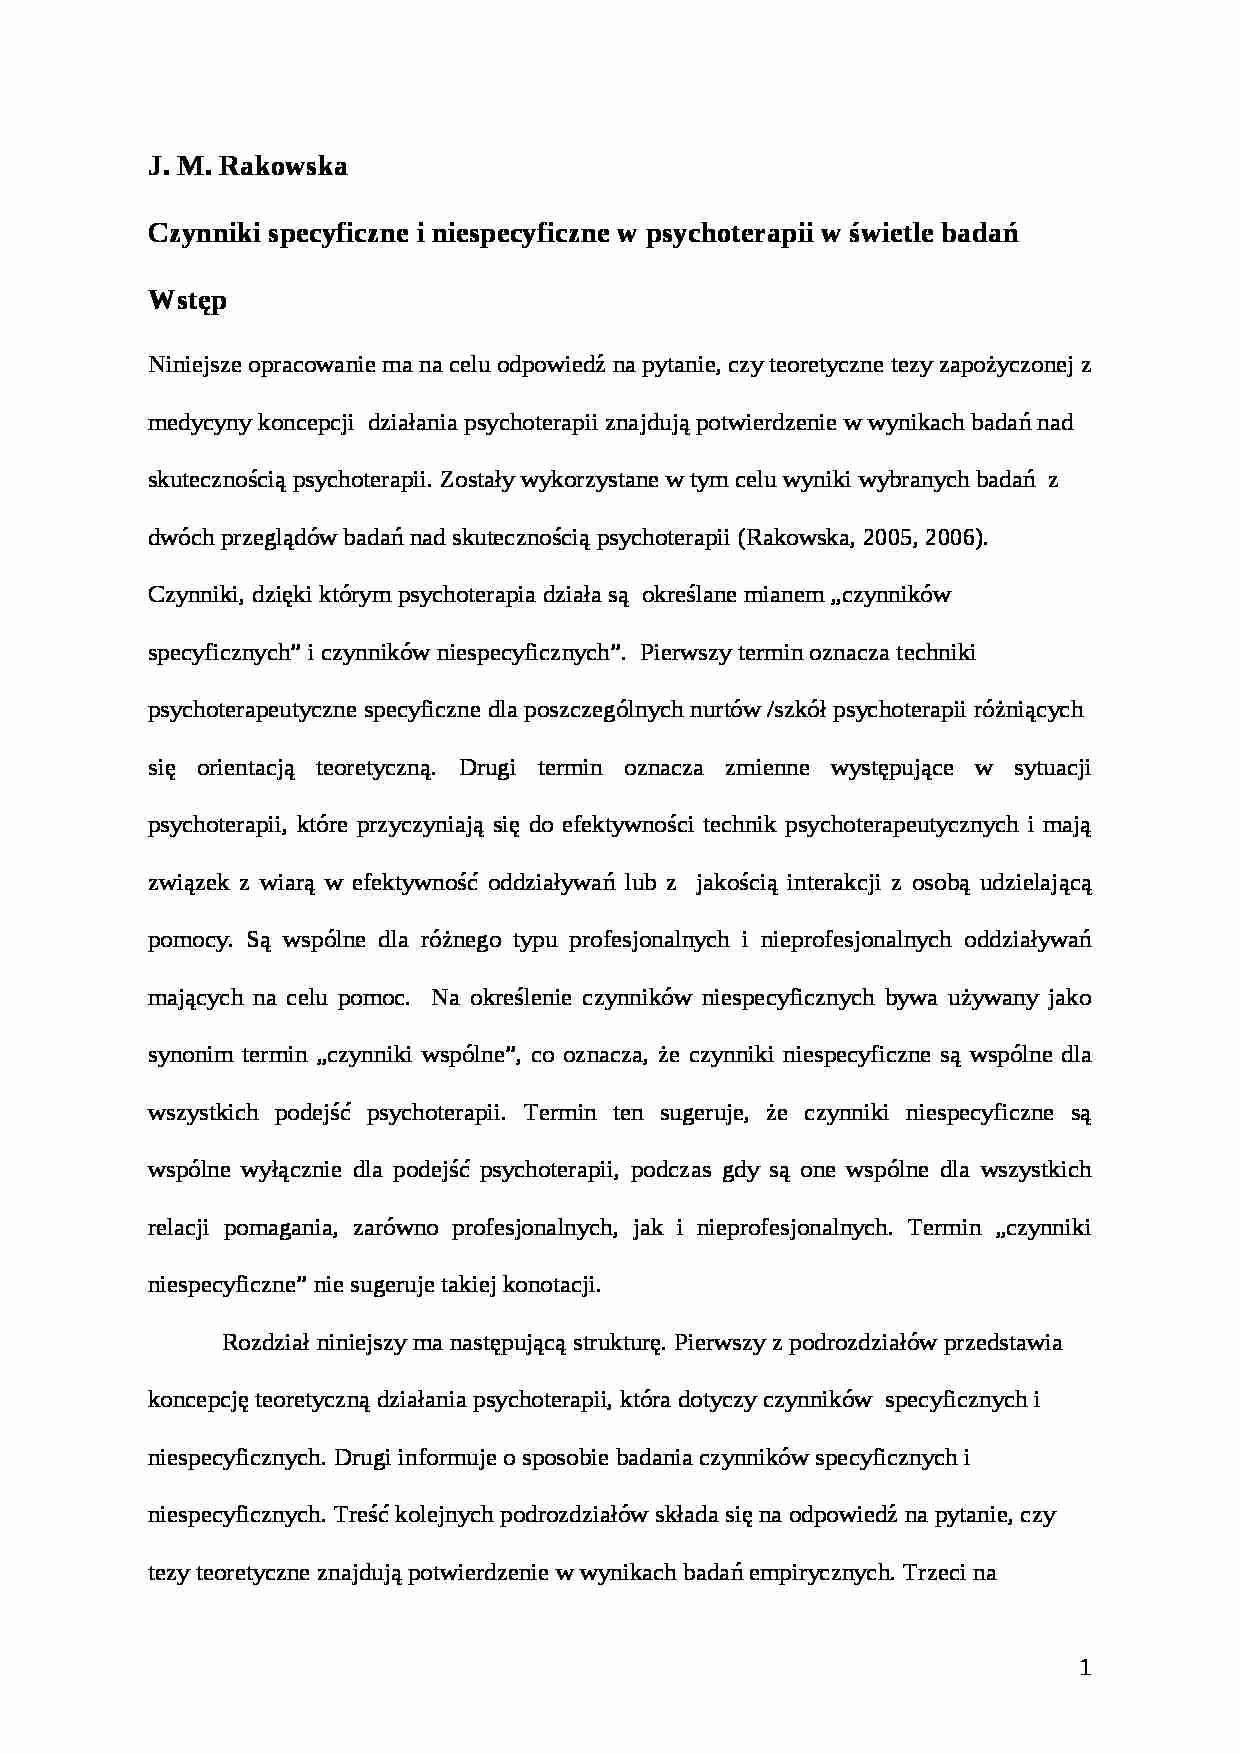 Czynniki specyficzne i niespecyficzne w psychoterapii w świetle badań - strona 1